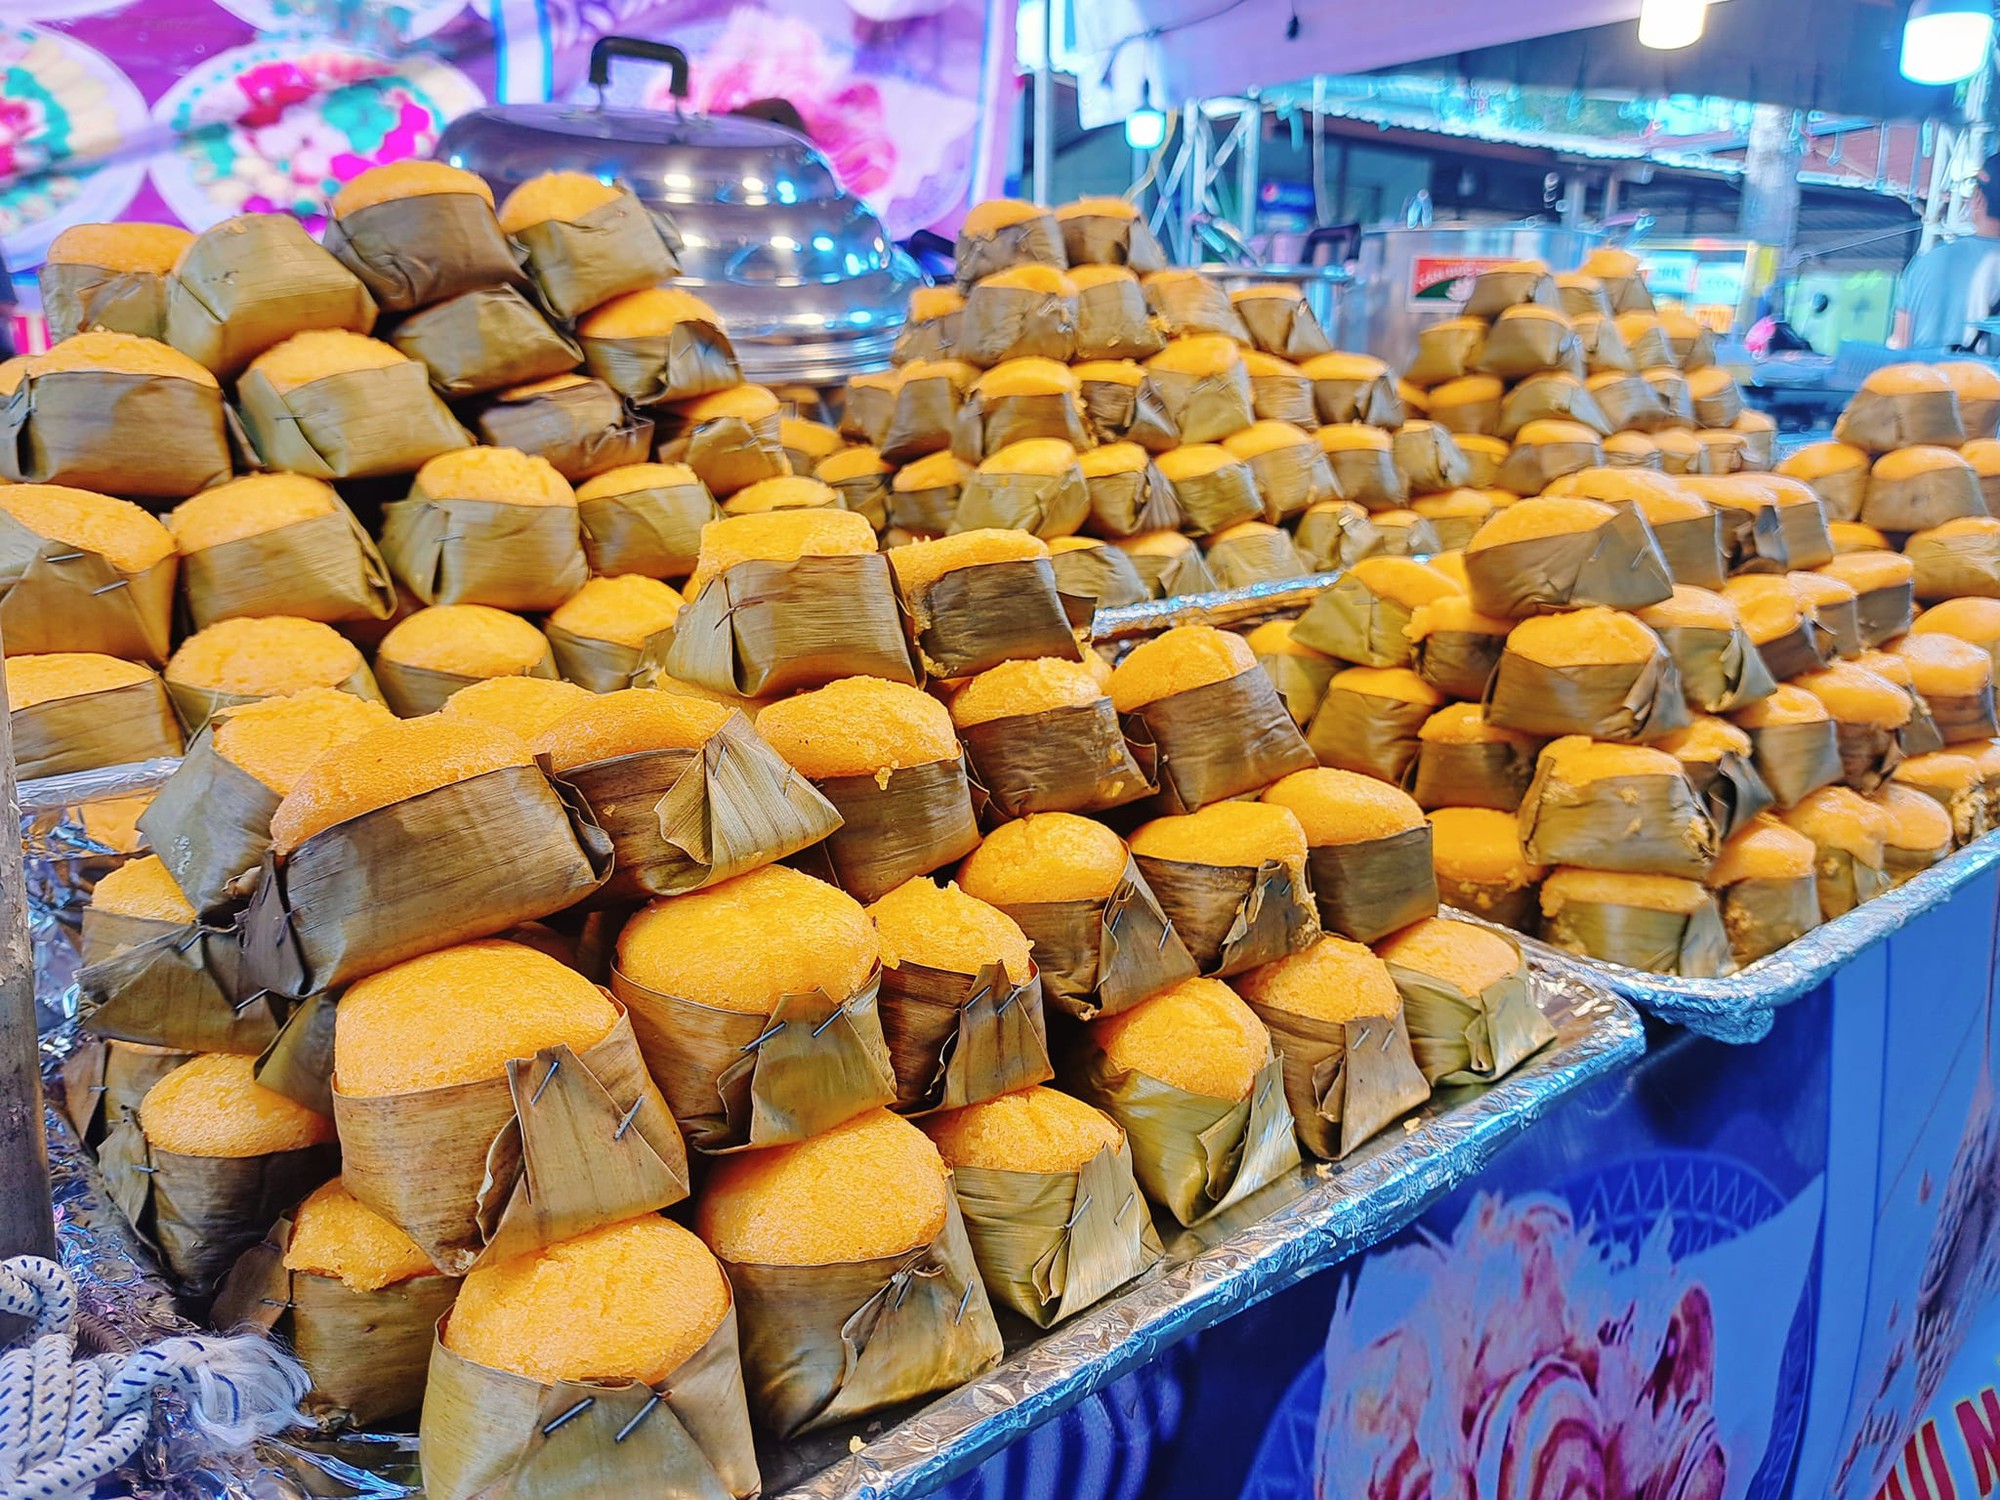 Đã mắt với hàng chục loại bánh đặc trưng miền Tây tại lễ hội bánh dân gian Nam bộ - Ảnh 4.